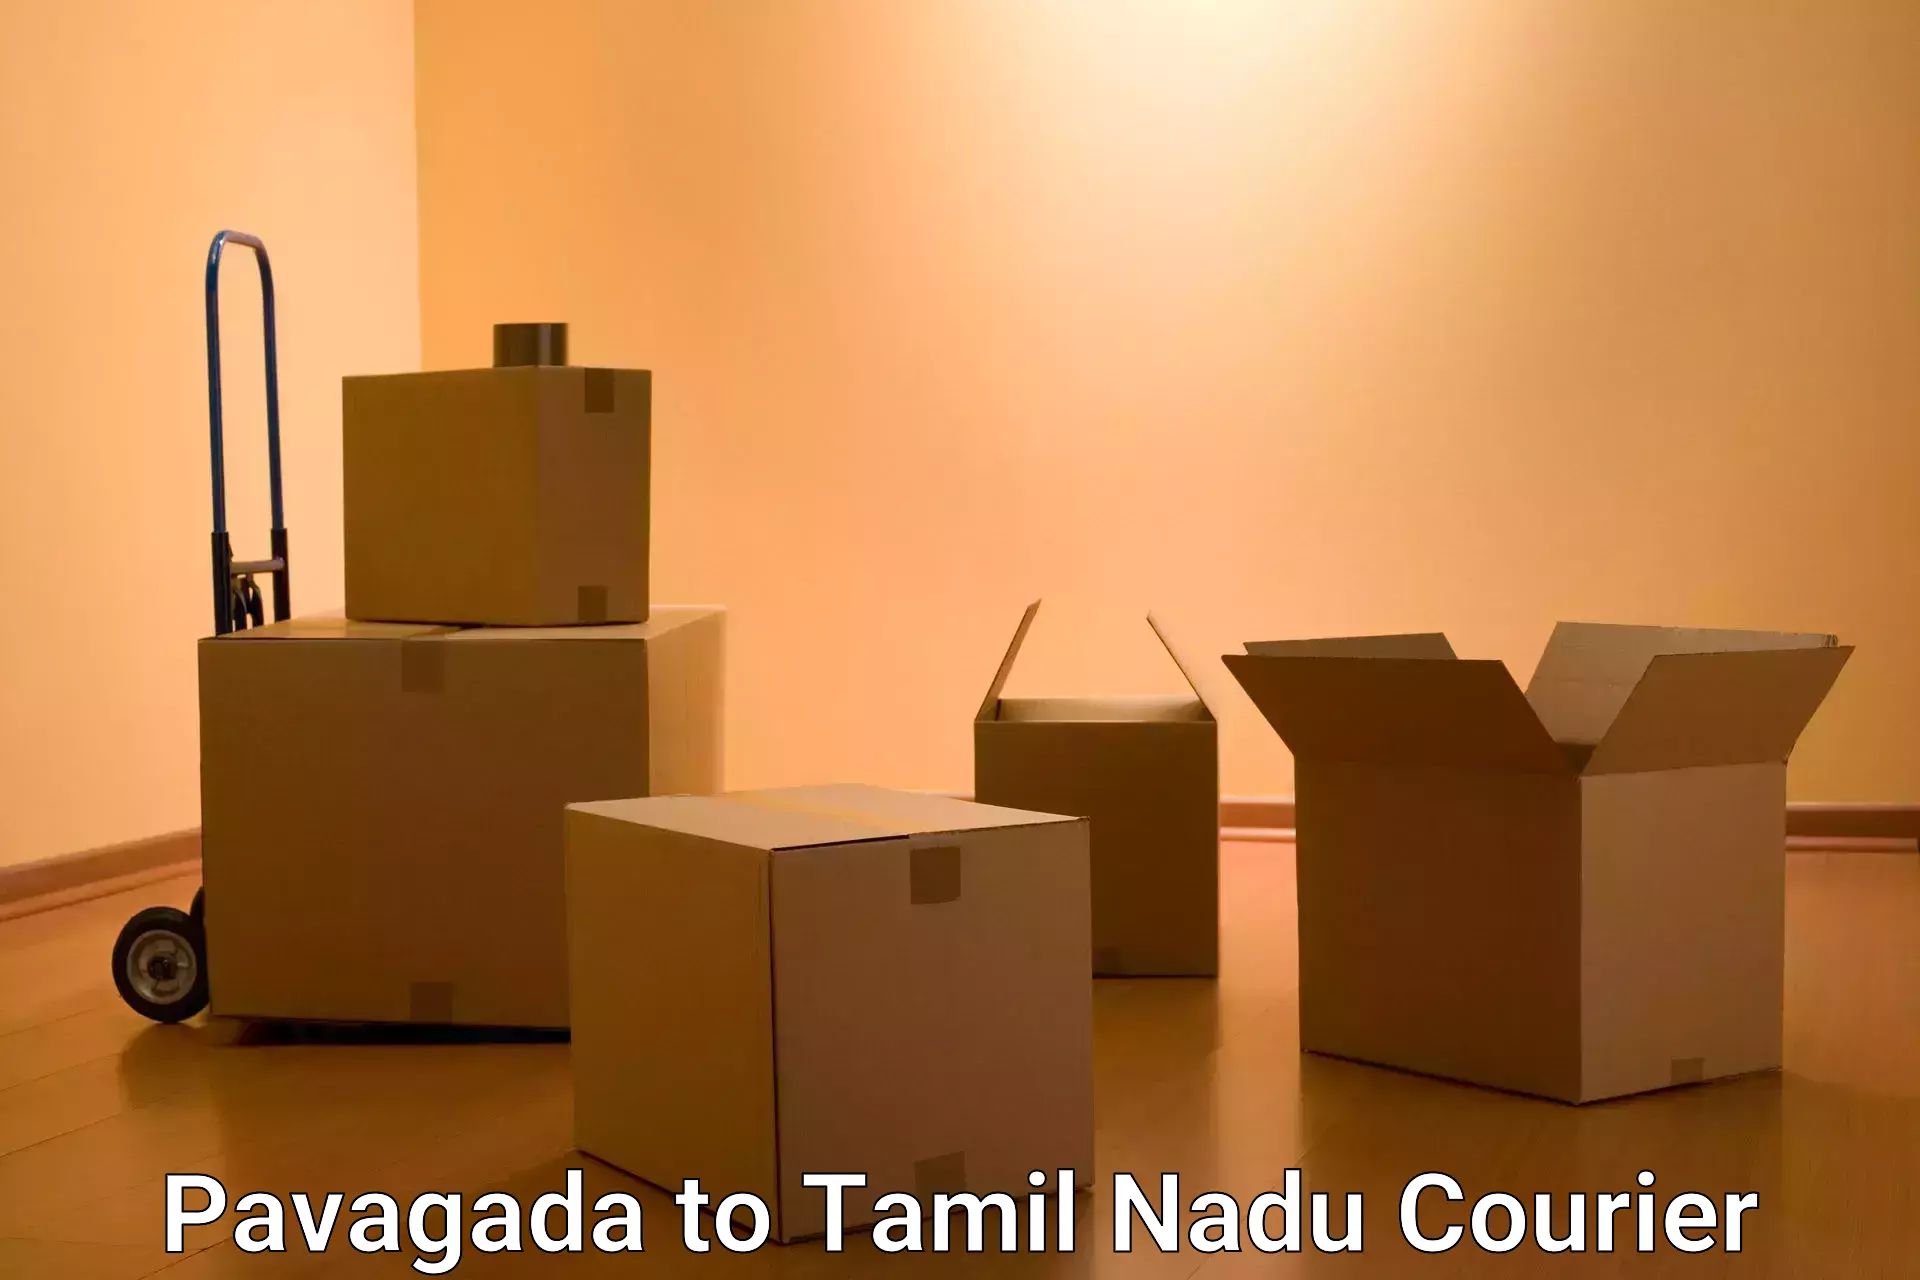 Express postal services Pavagada to Tamil Nadu